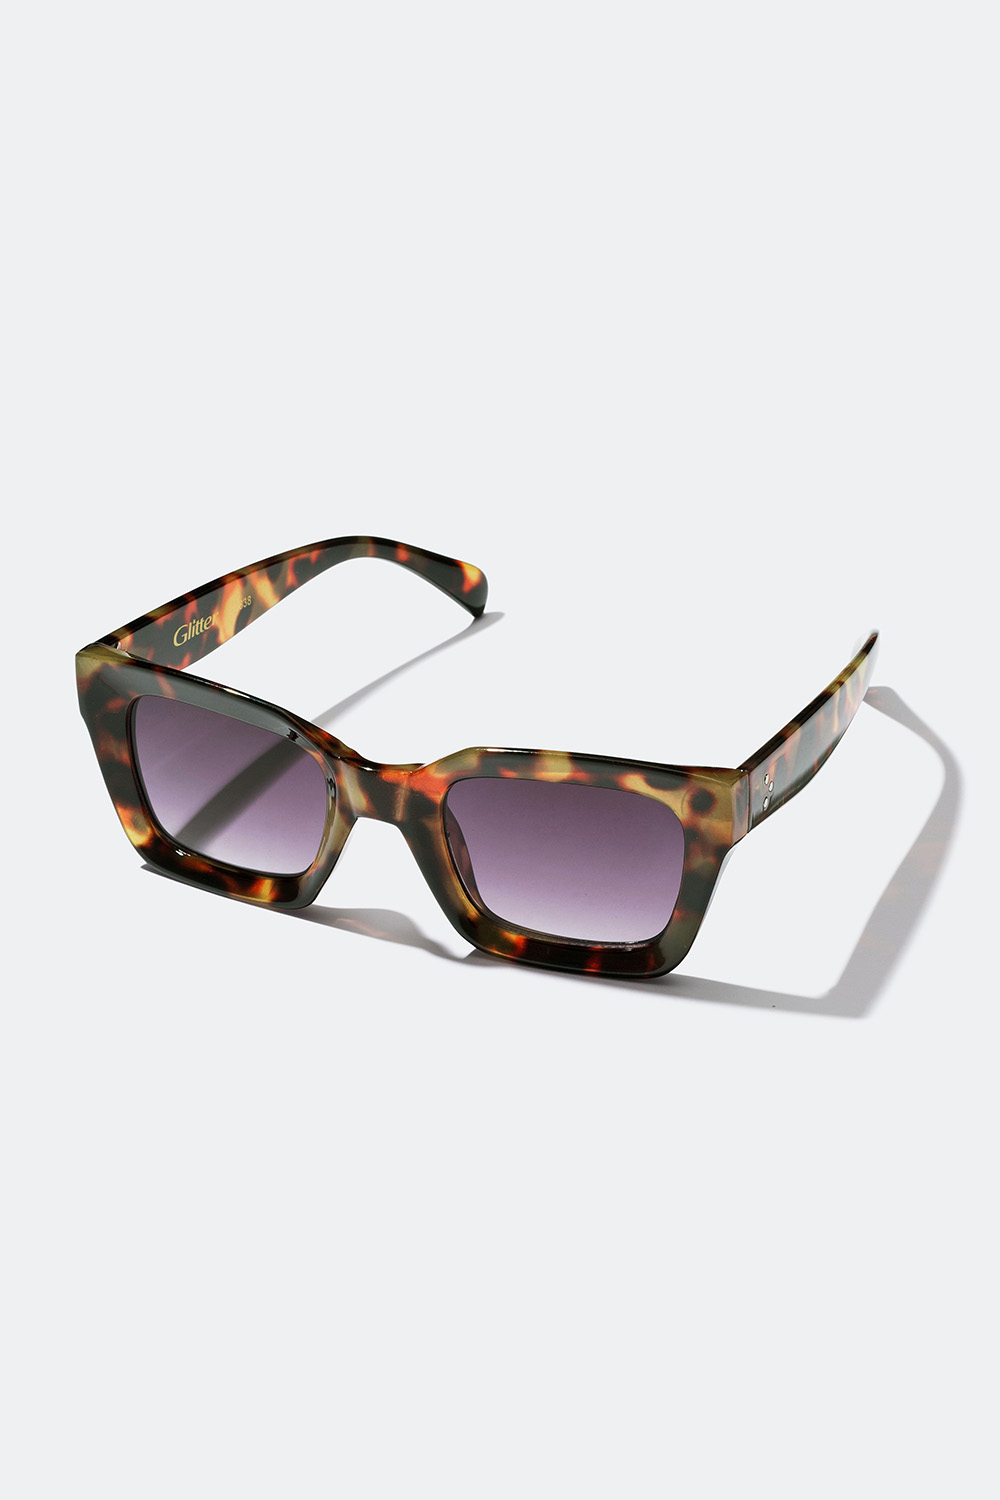 Solbriller en firkantet form Glitter.dk